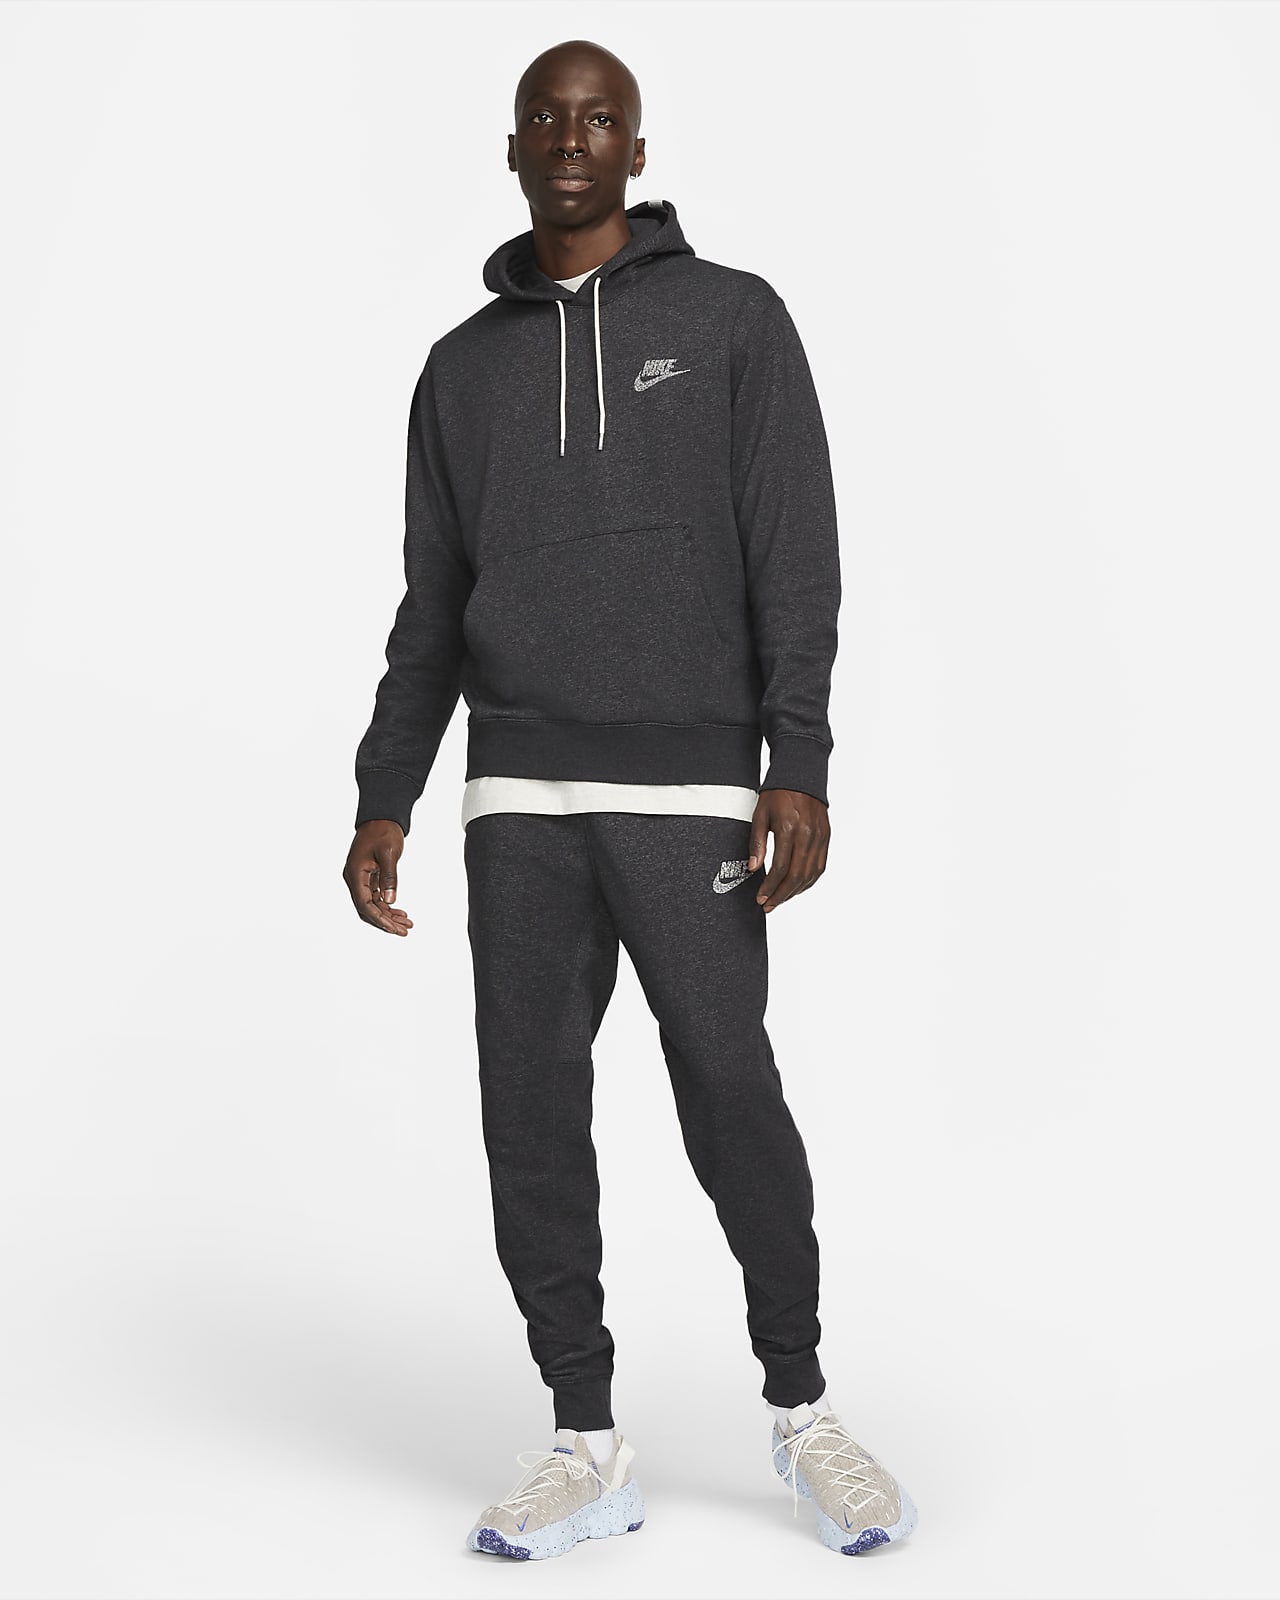 Nike Sportswear Men's Fleece Pullover Hoodie.